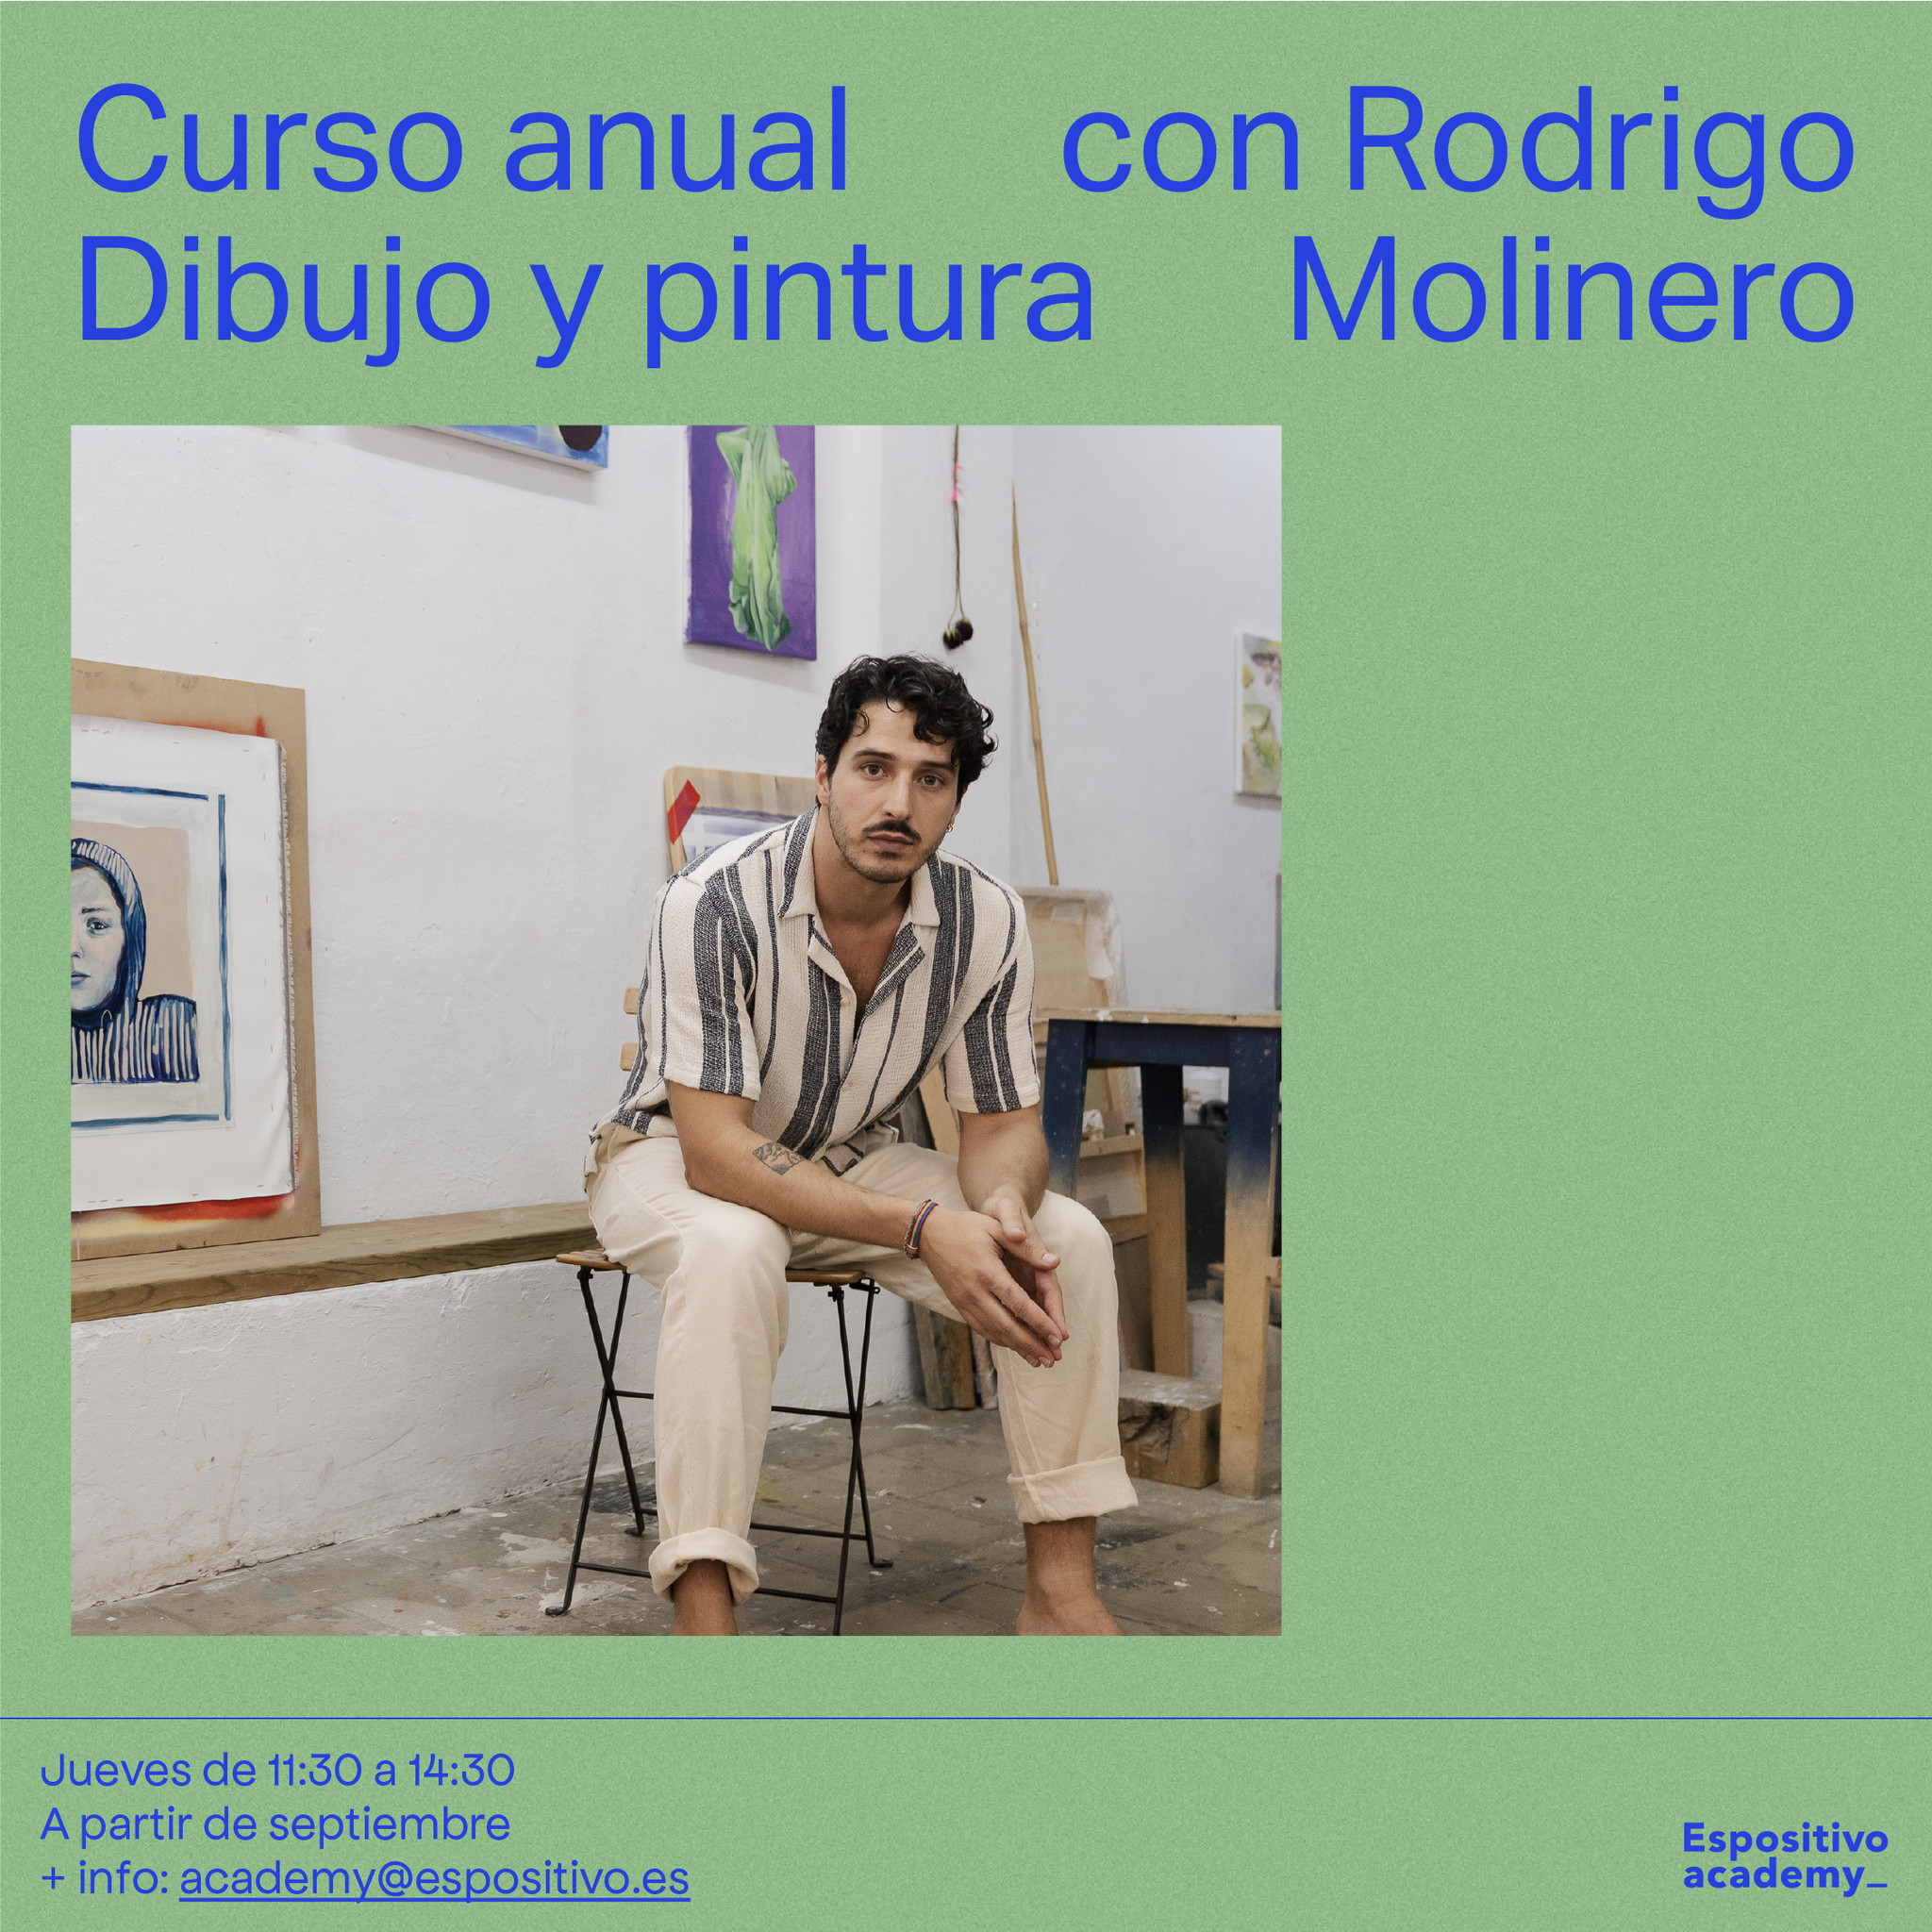 Dibujo y pintura para adultxs con Rodrigo Molinero.<br>Jueves 11:30 a 14:30h